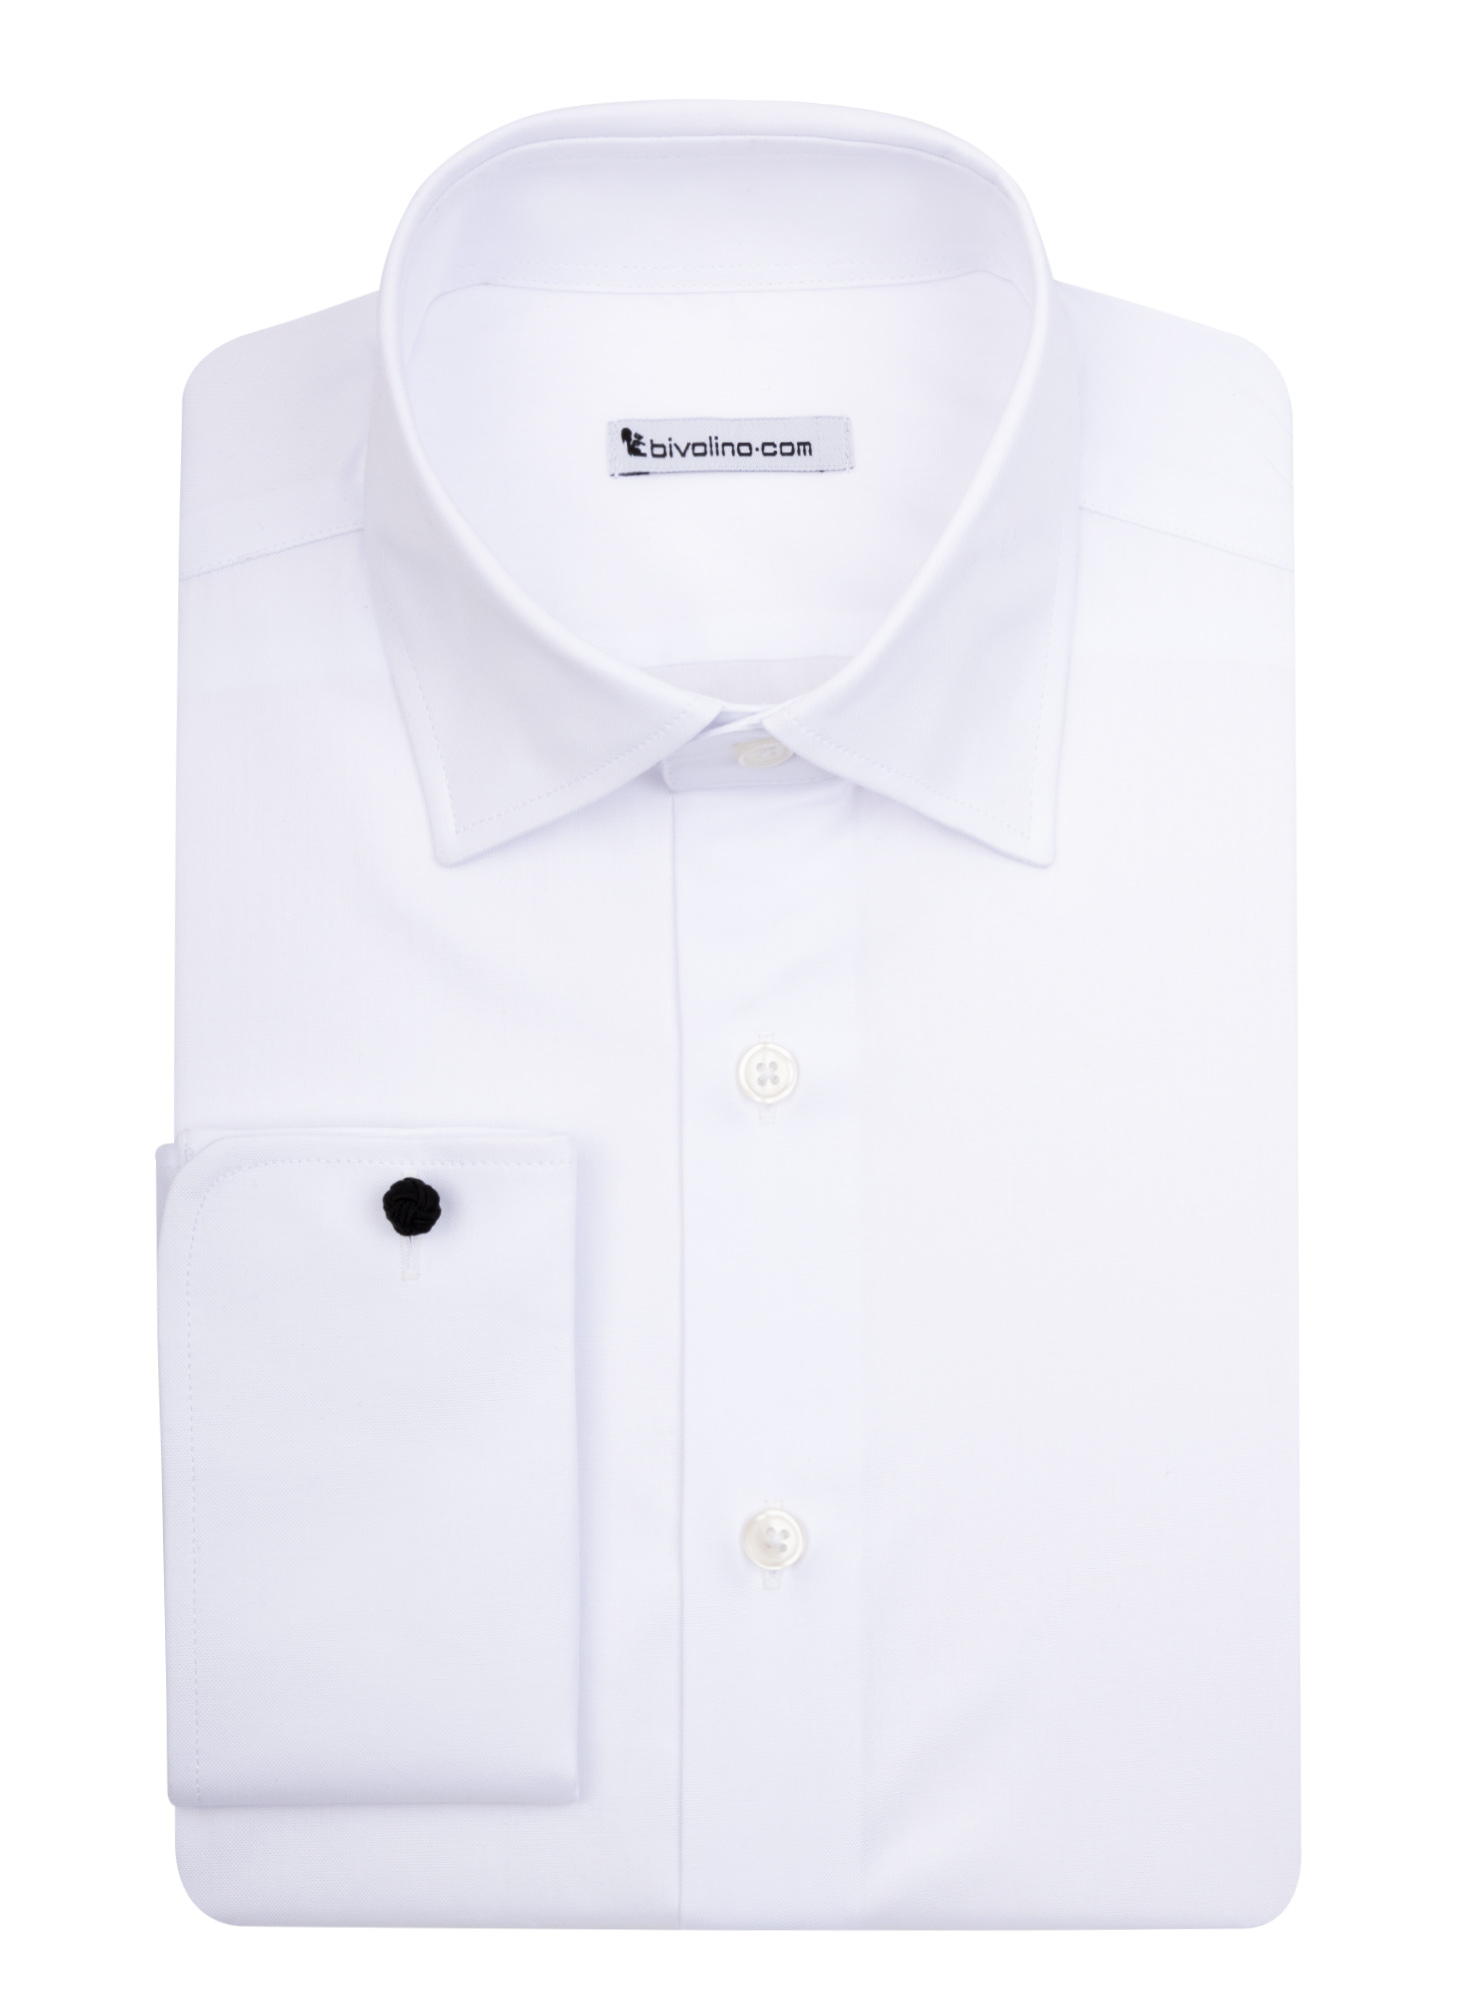 UDINE -  White PinPoint shirt - KIWI 1